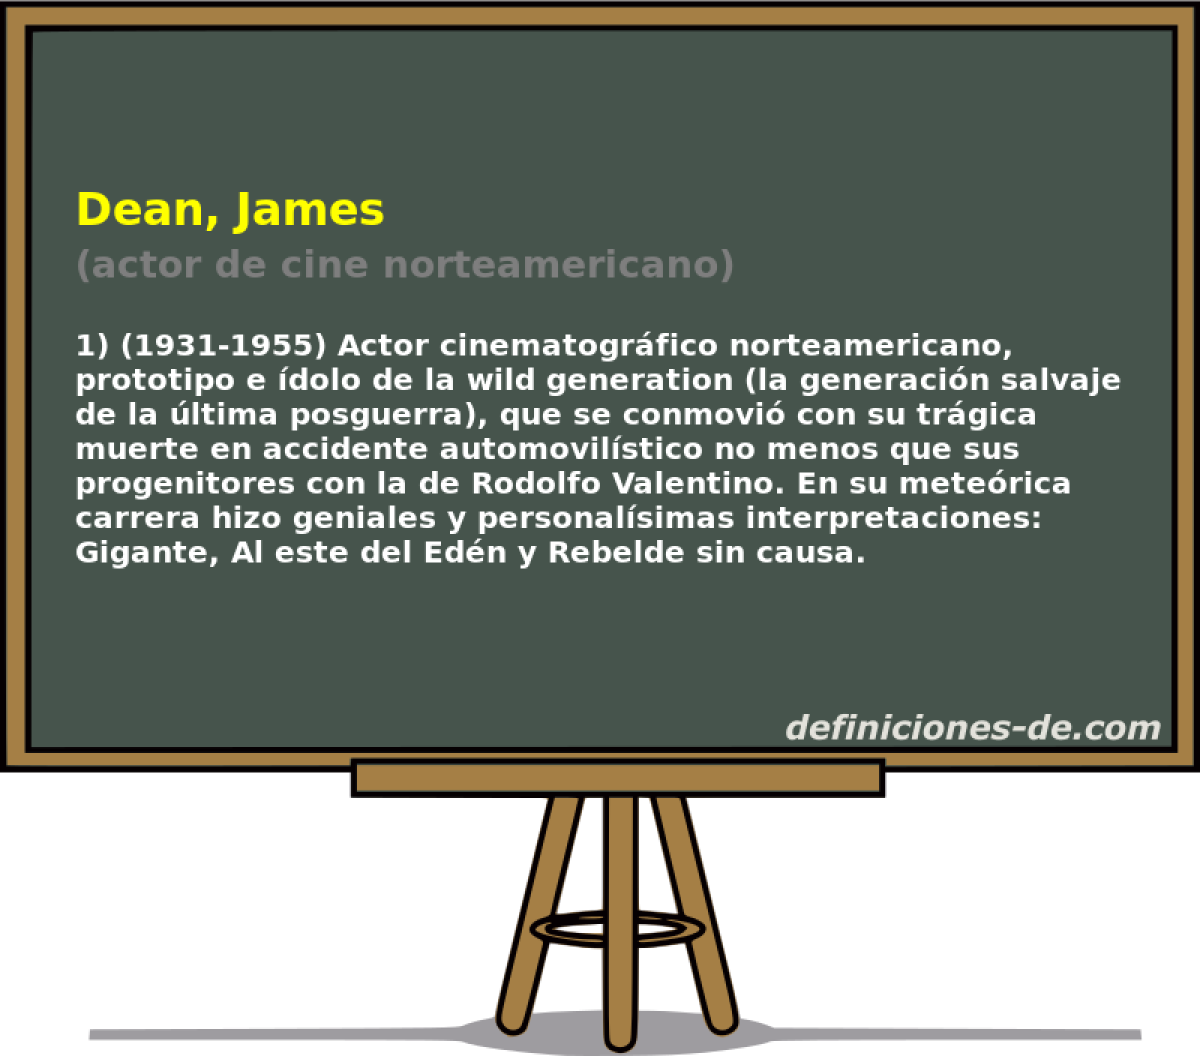 Dean, James (actor de cine norteamericano)